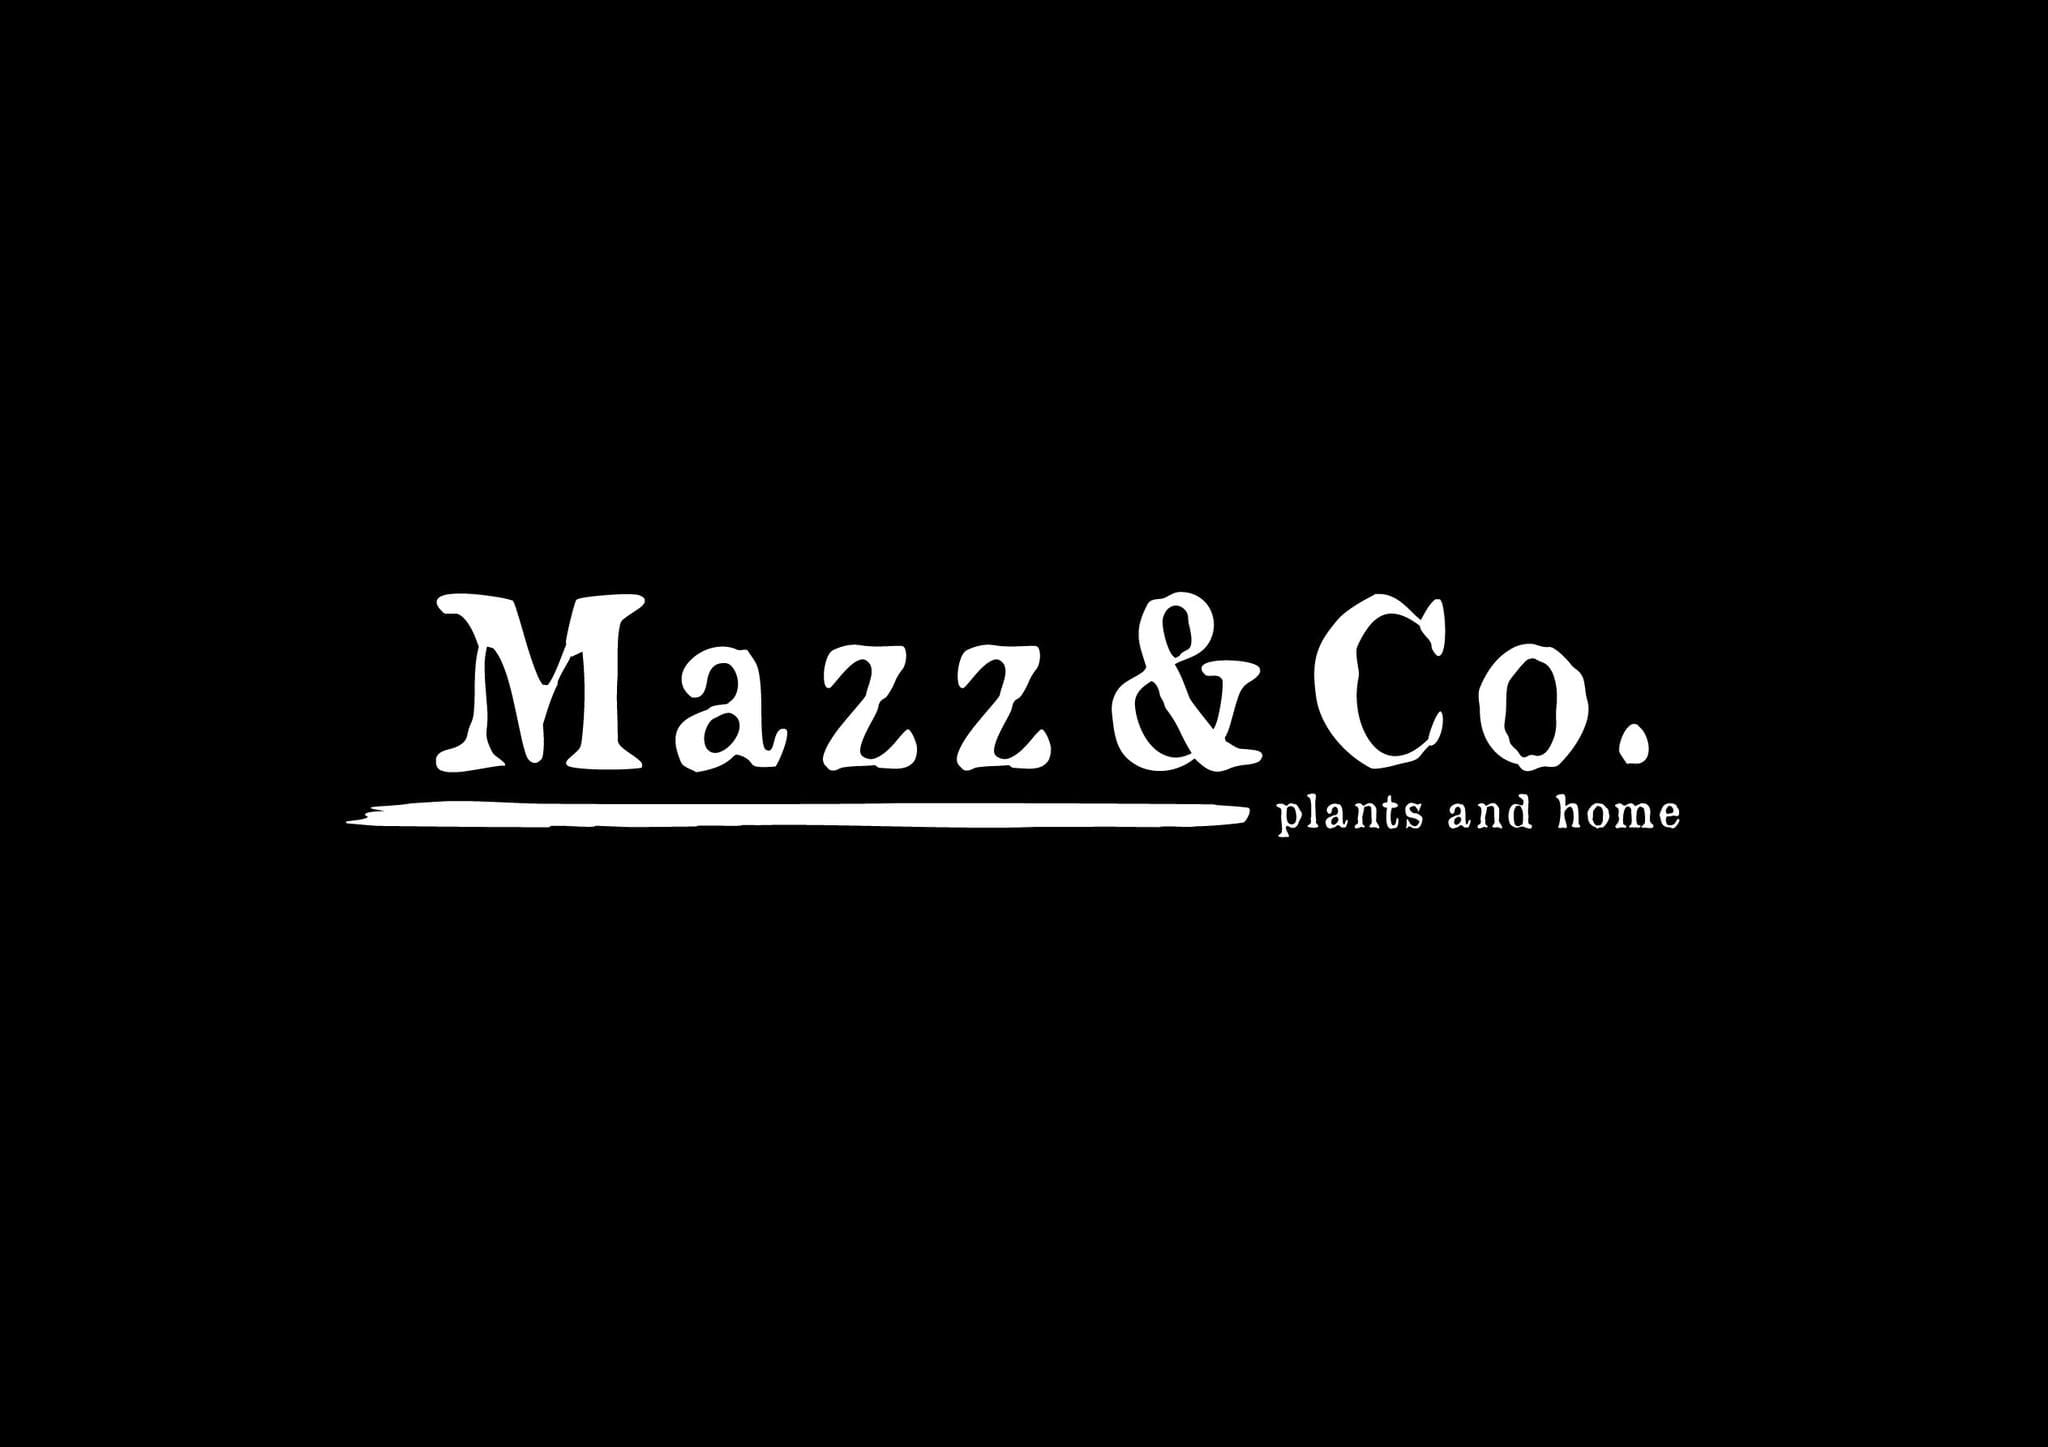 Mazz & Co